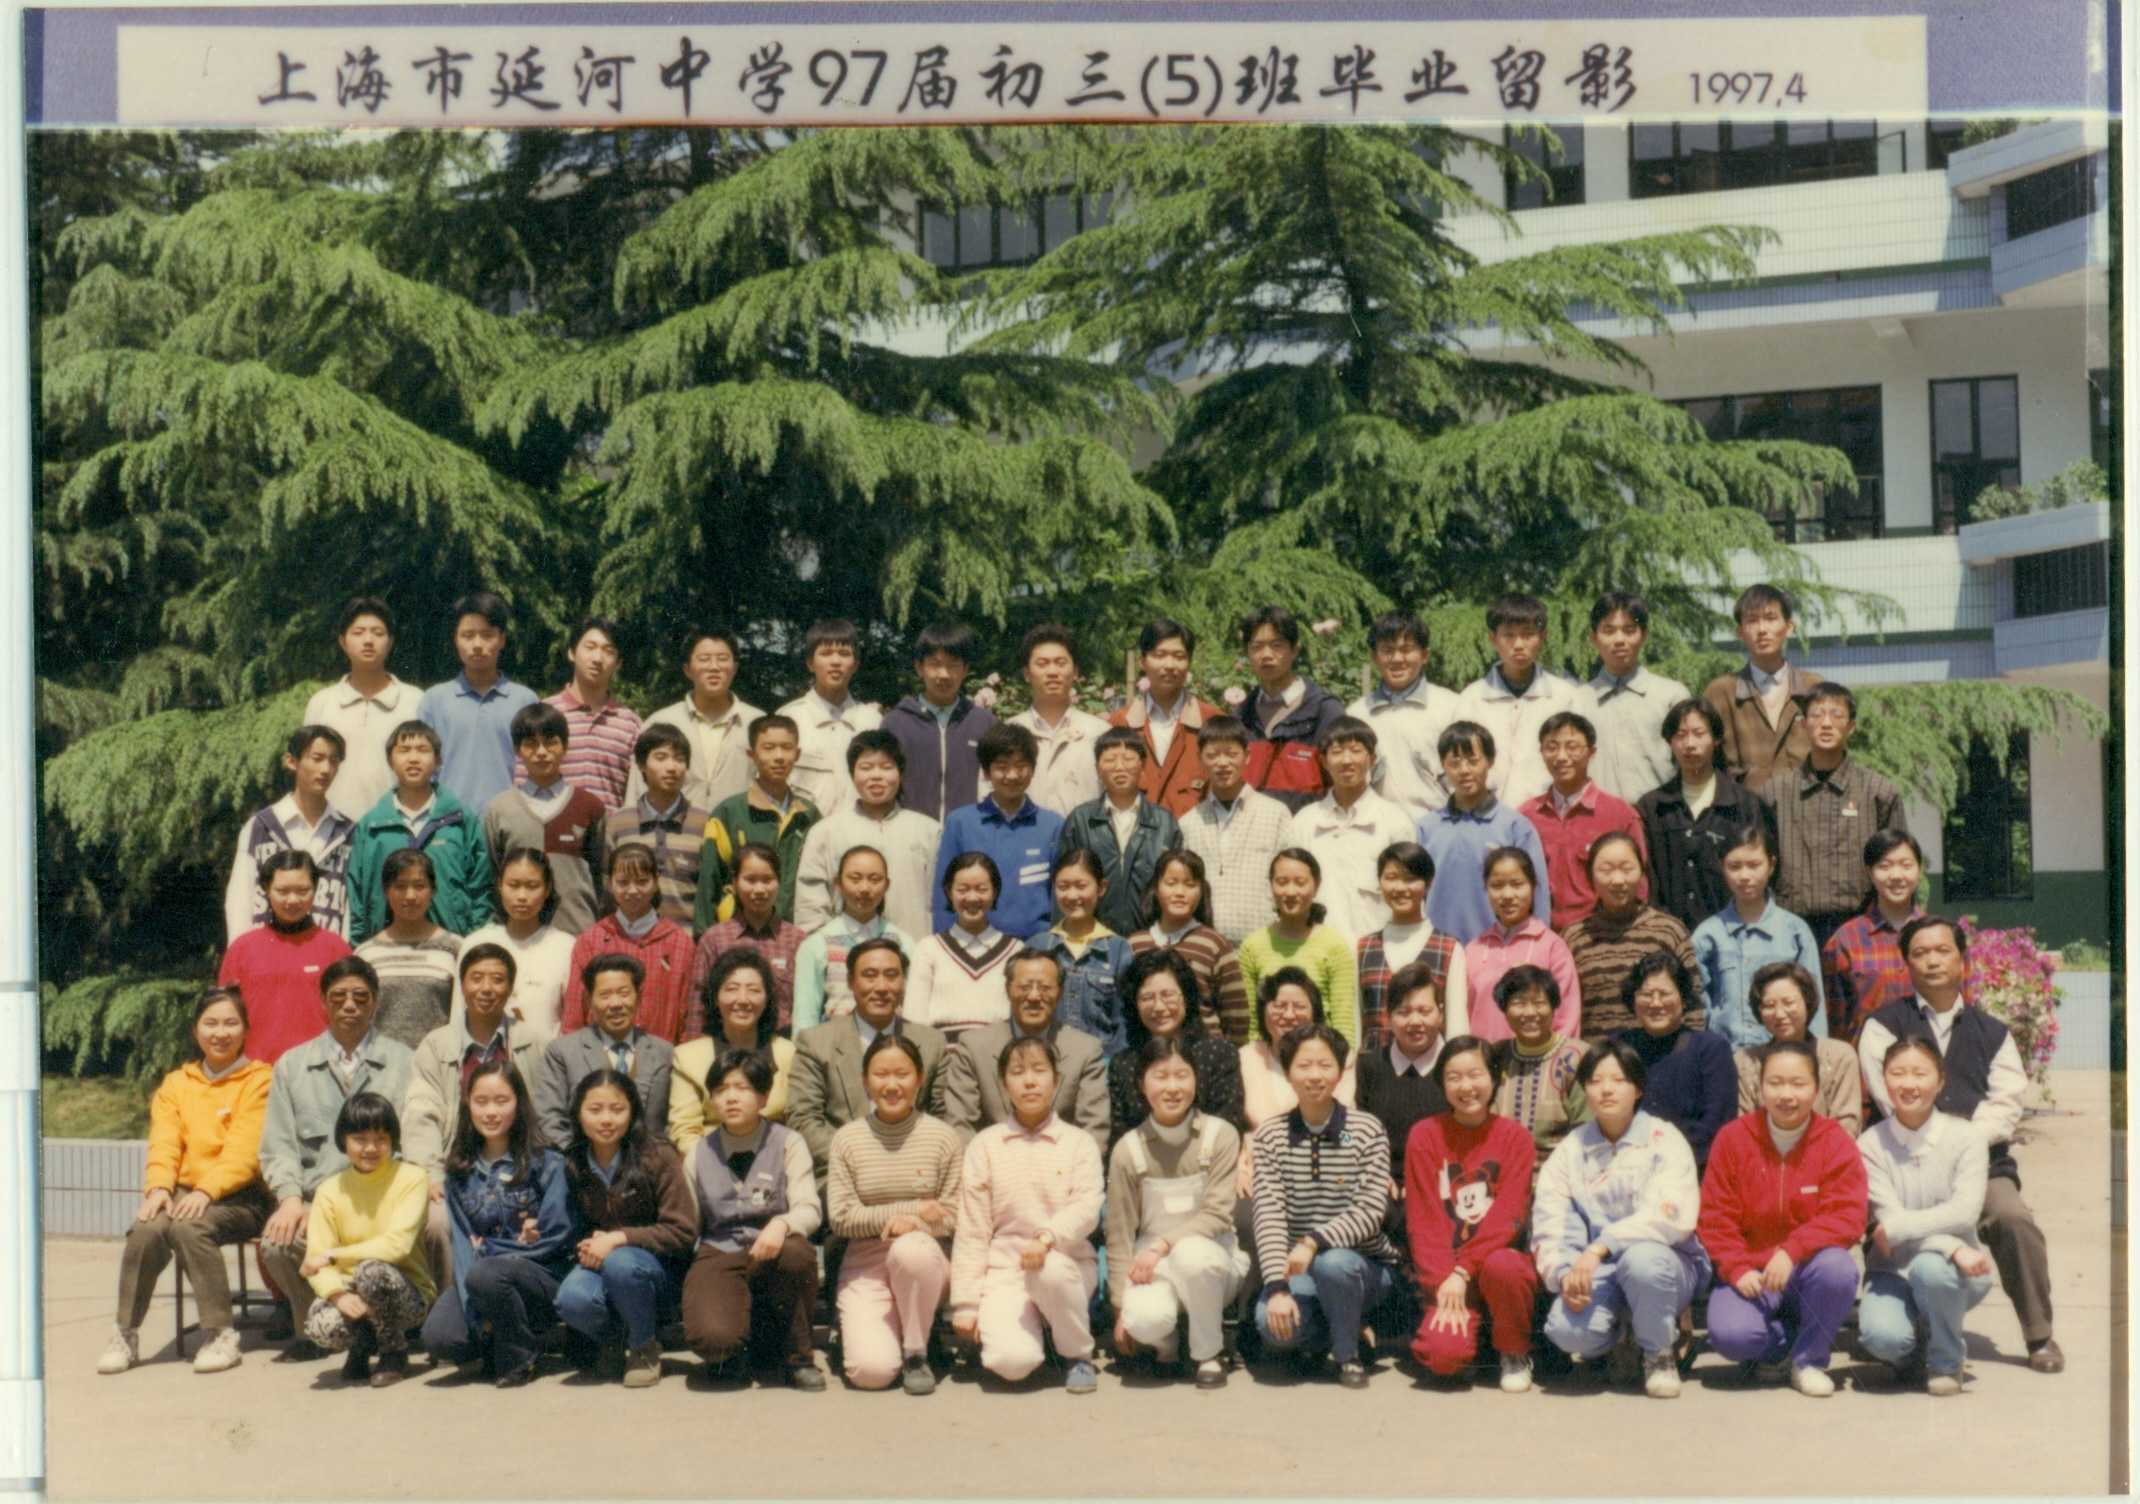 上海市延河中学 -- 历届学生毕业照 -- 97届5班学生照